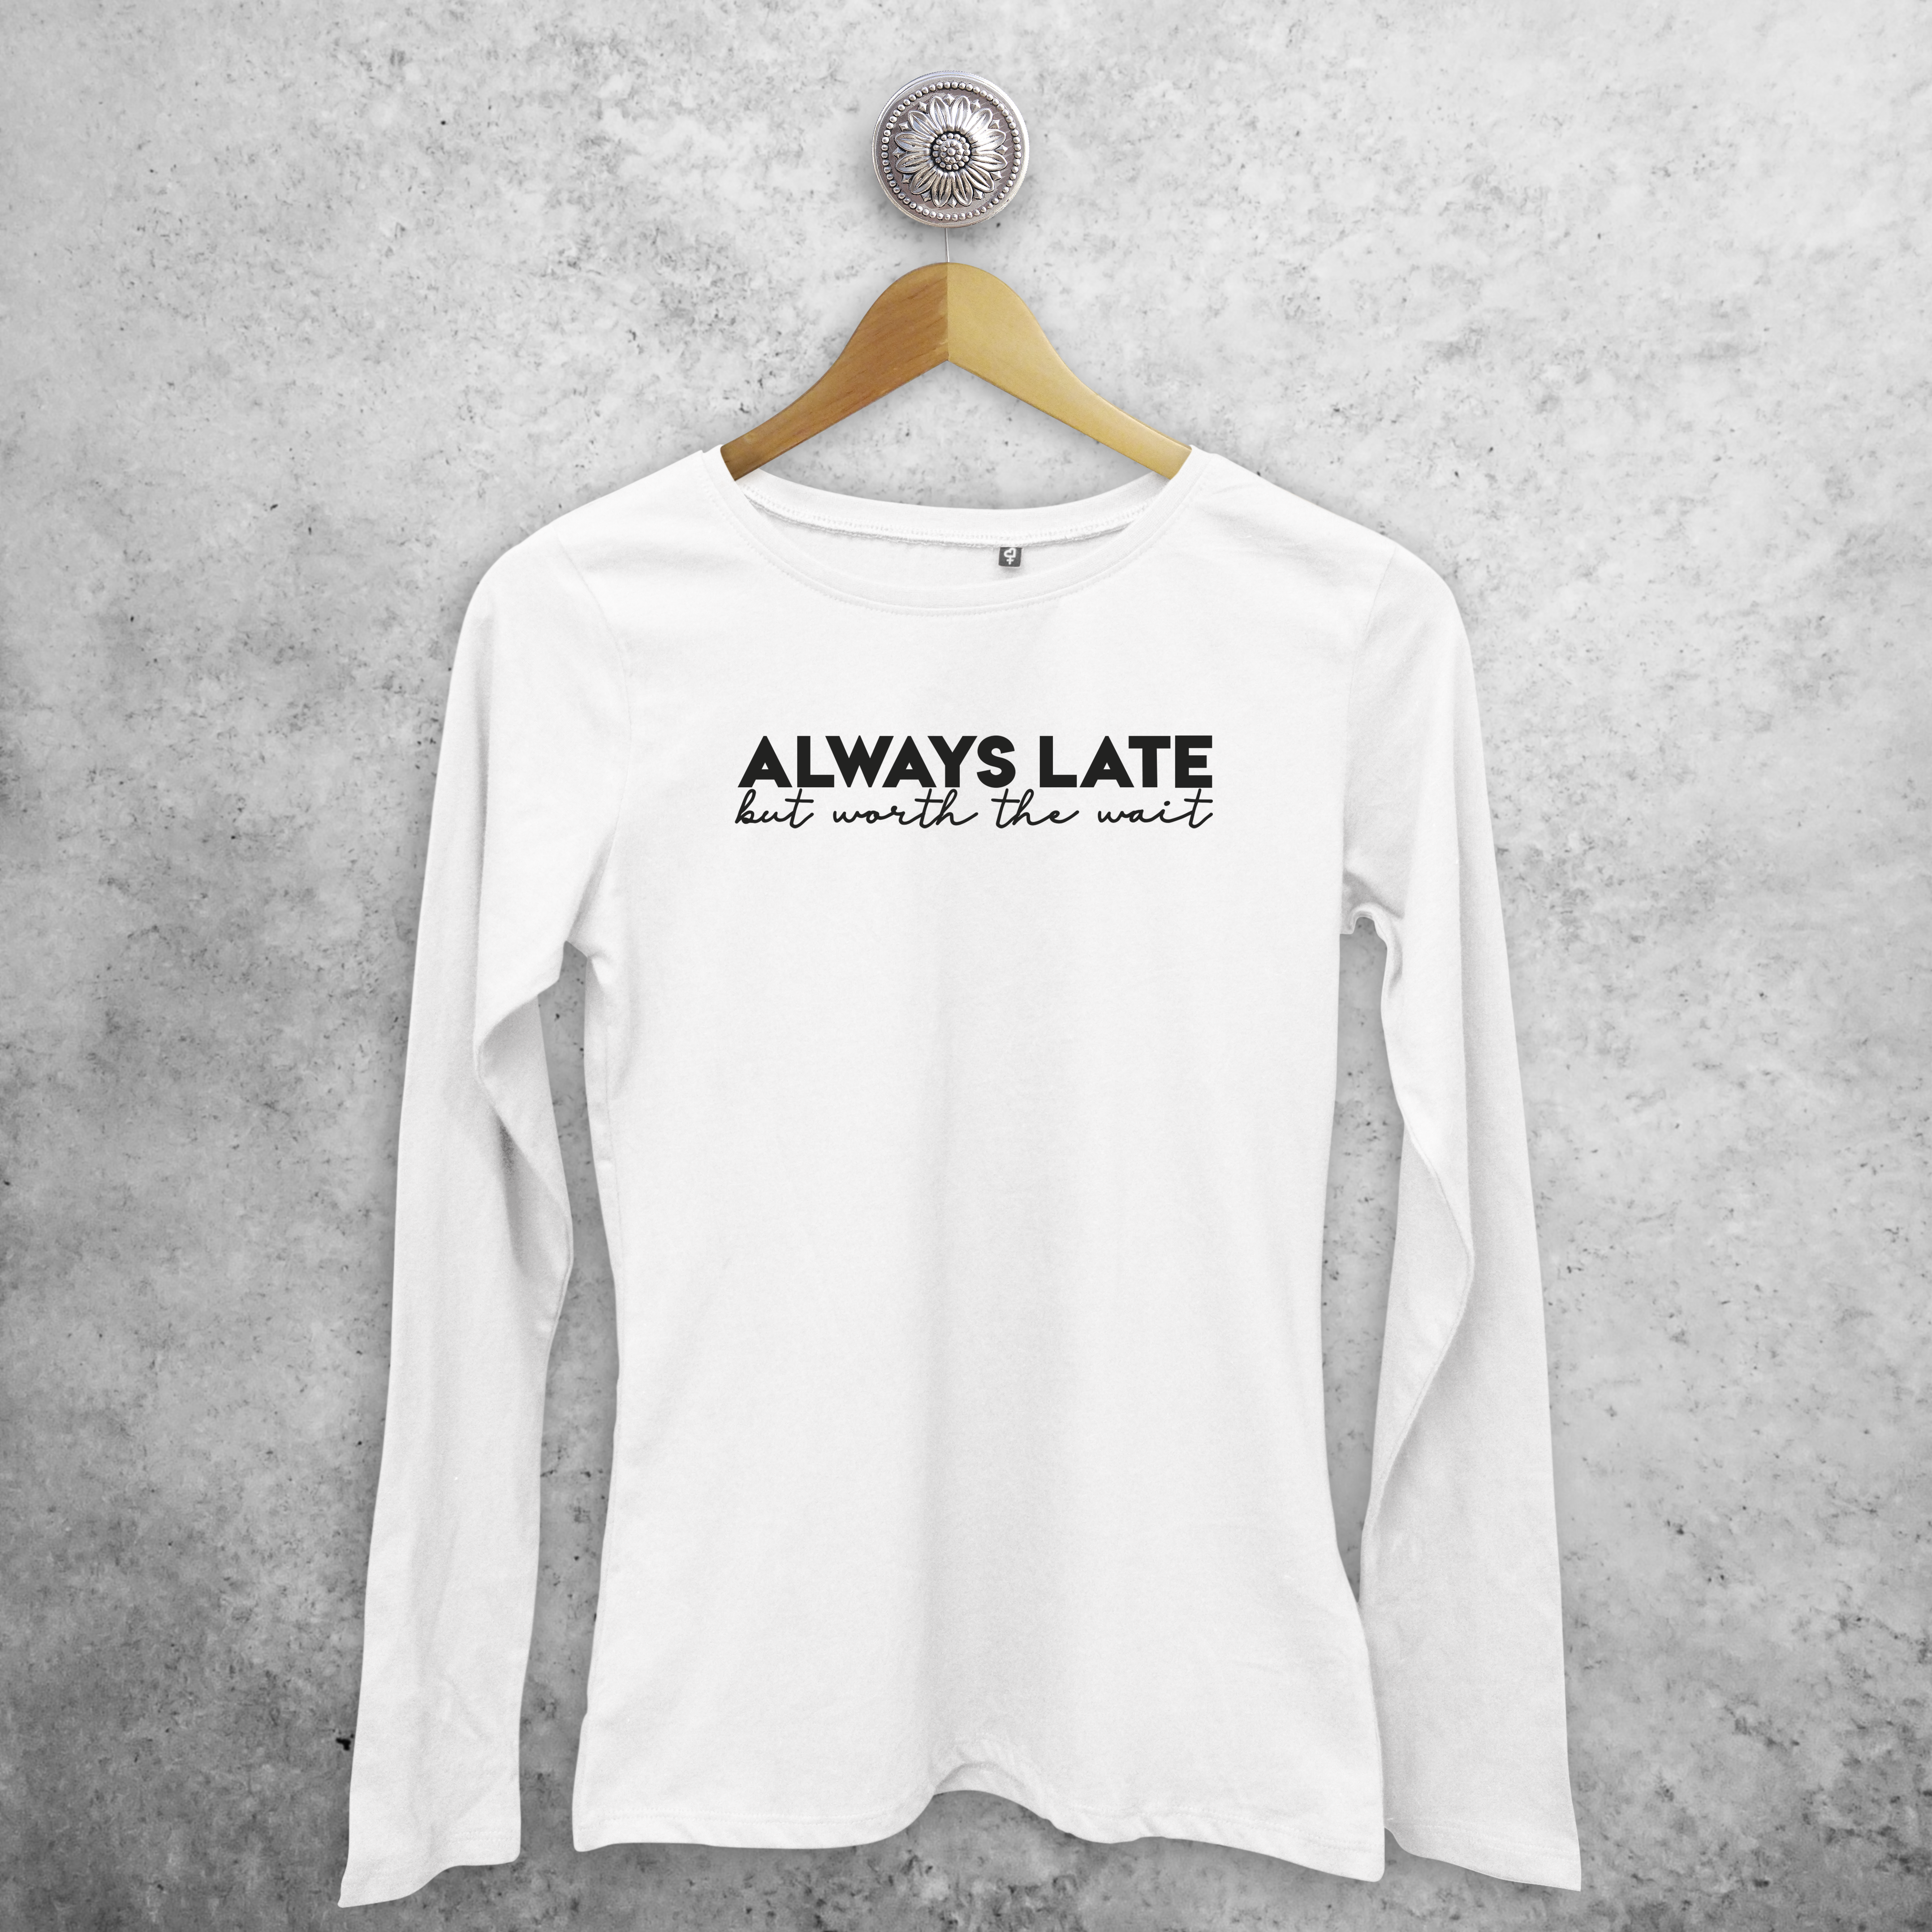 'Always late, but worth the wait' volwassene shirt met lange mouwen